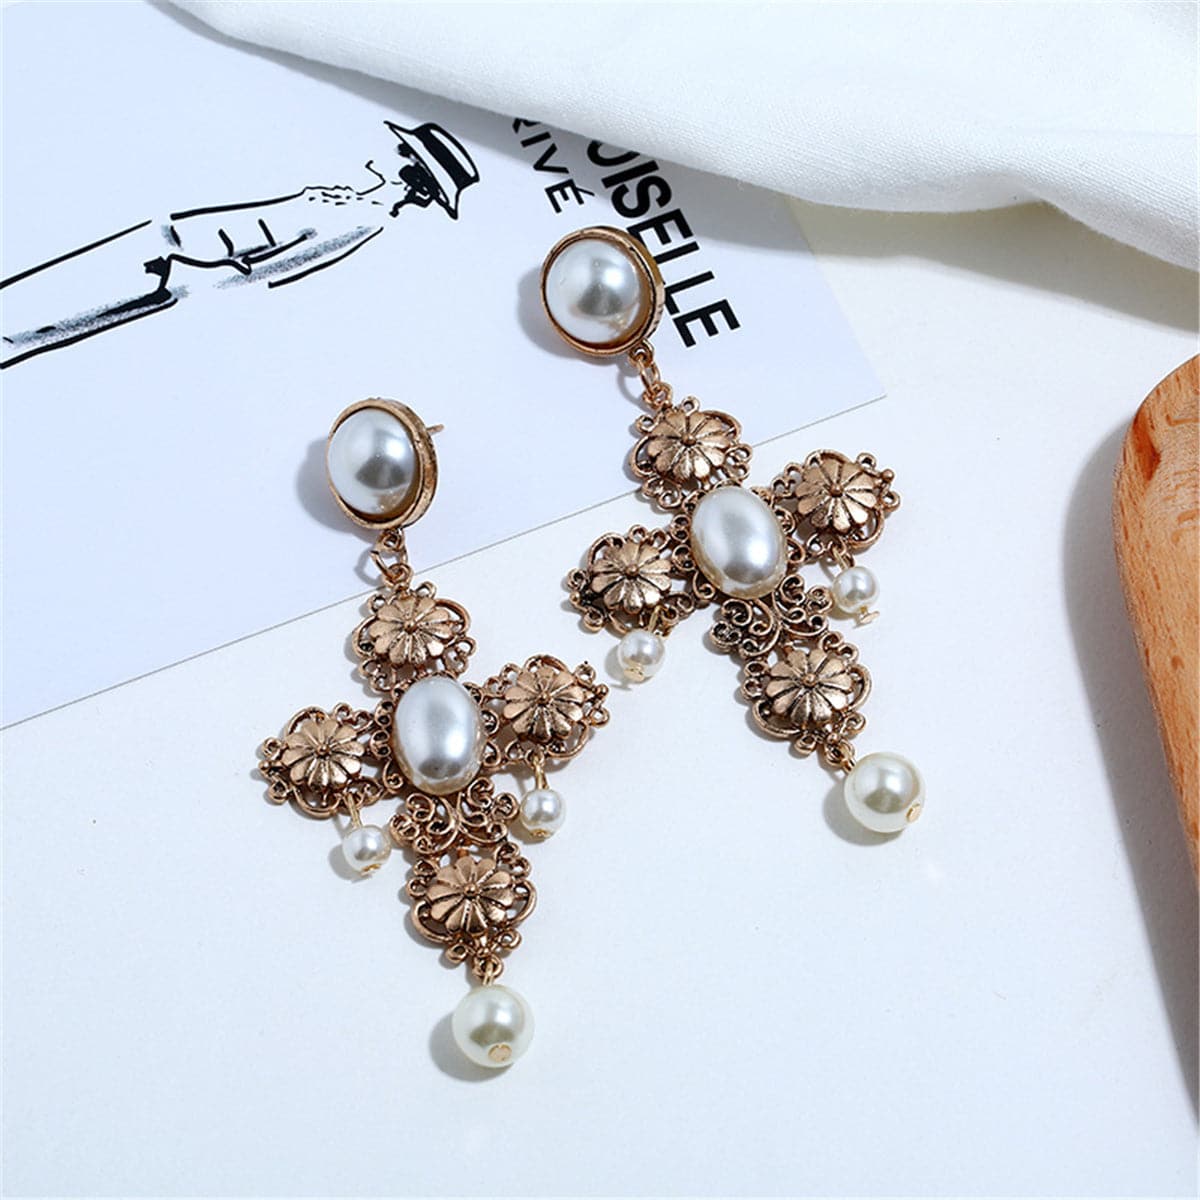 Pearl & 18K Gold-Plated Cross Drop Earrings